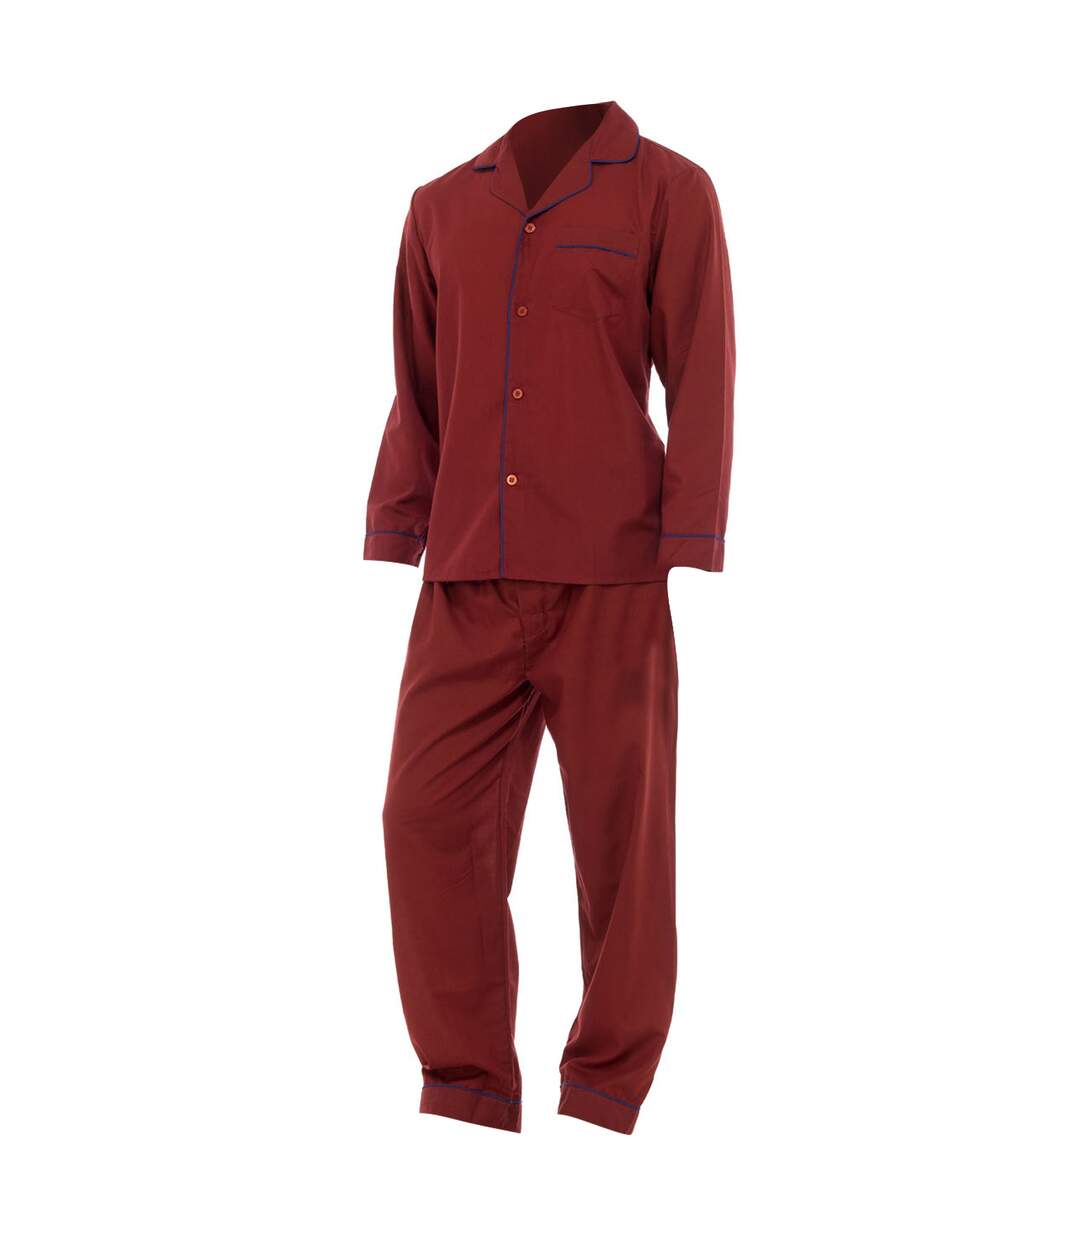 Pantalon et haut à manches longues de pyjama - Homme (Rouge) - UTN510